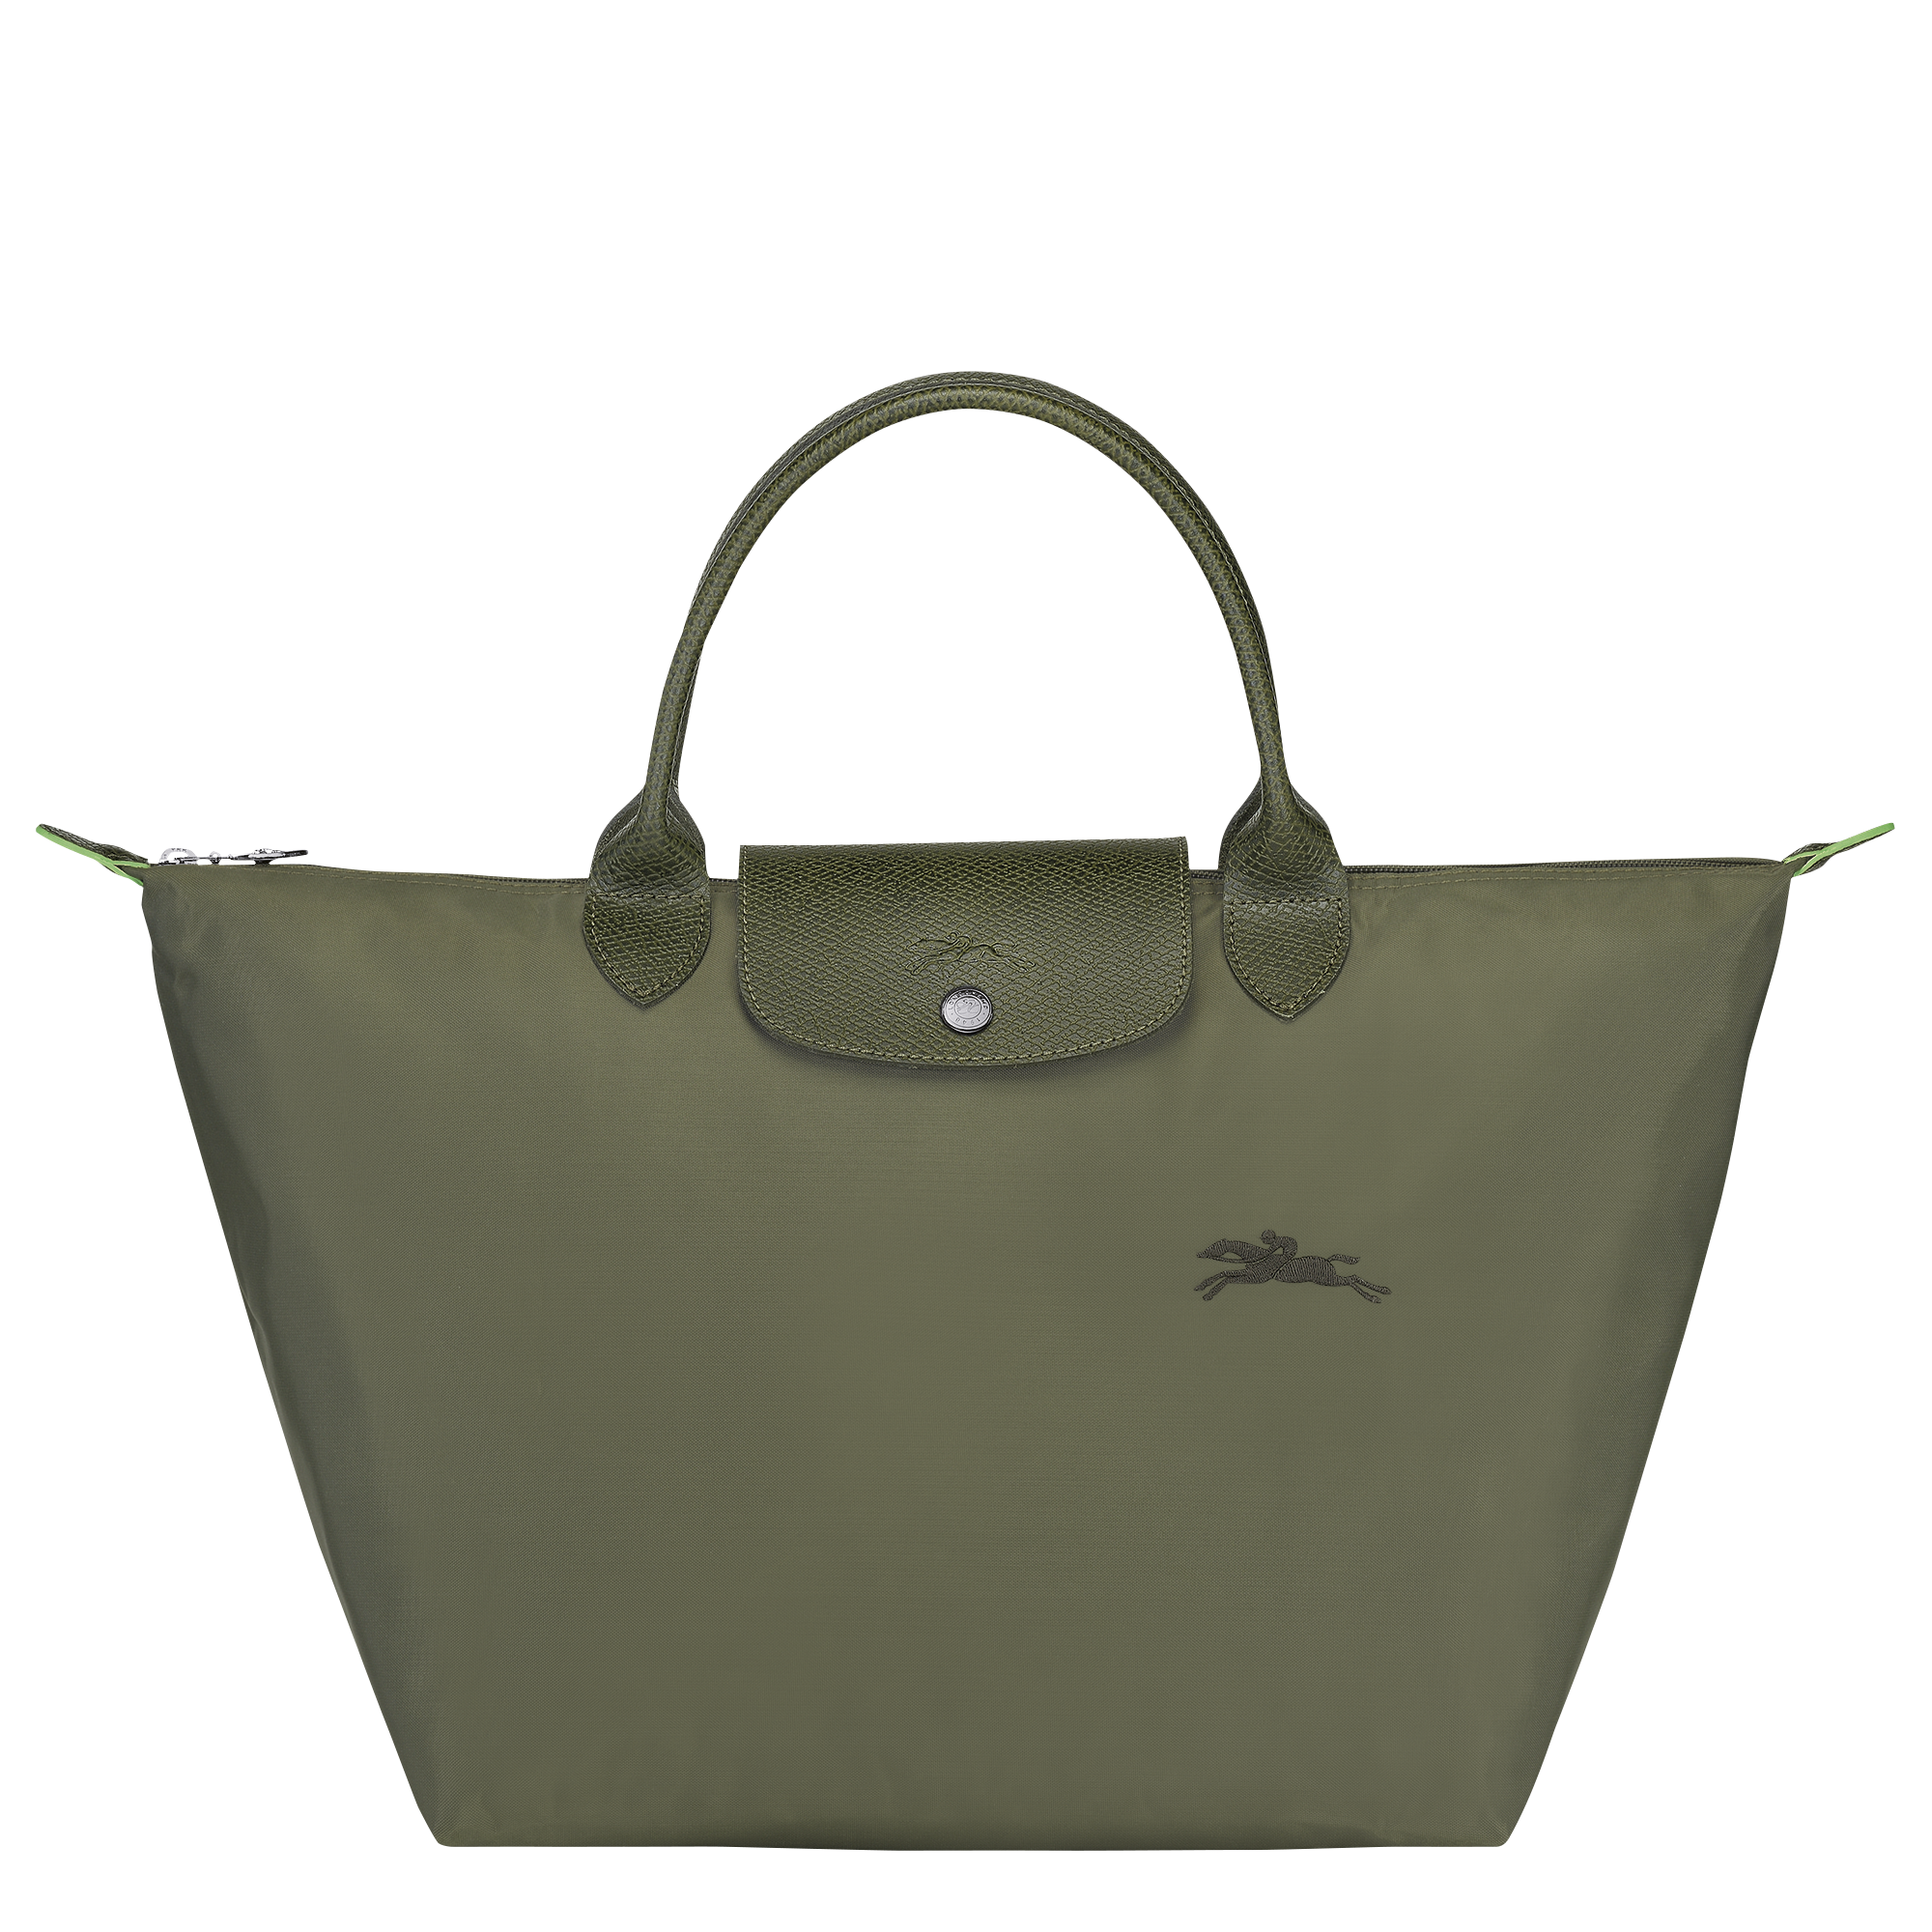 Le Pliage Green Handtasche M, Fichte